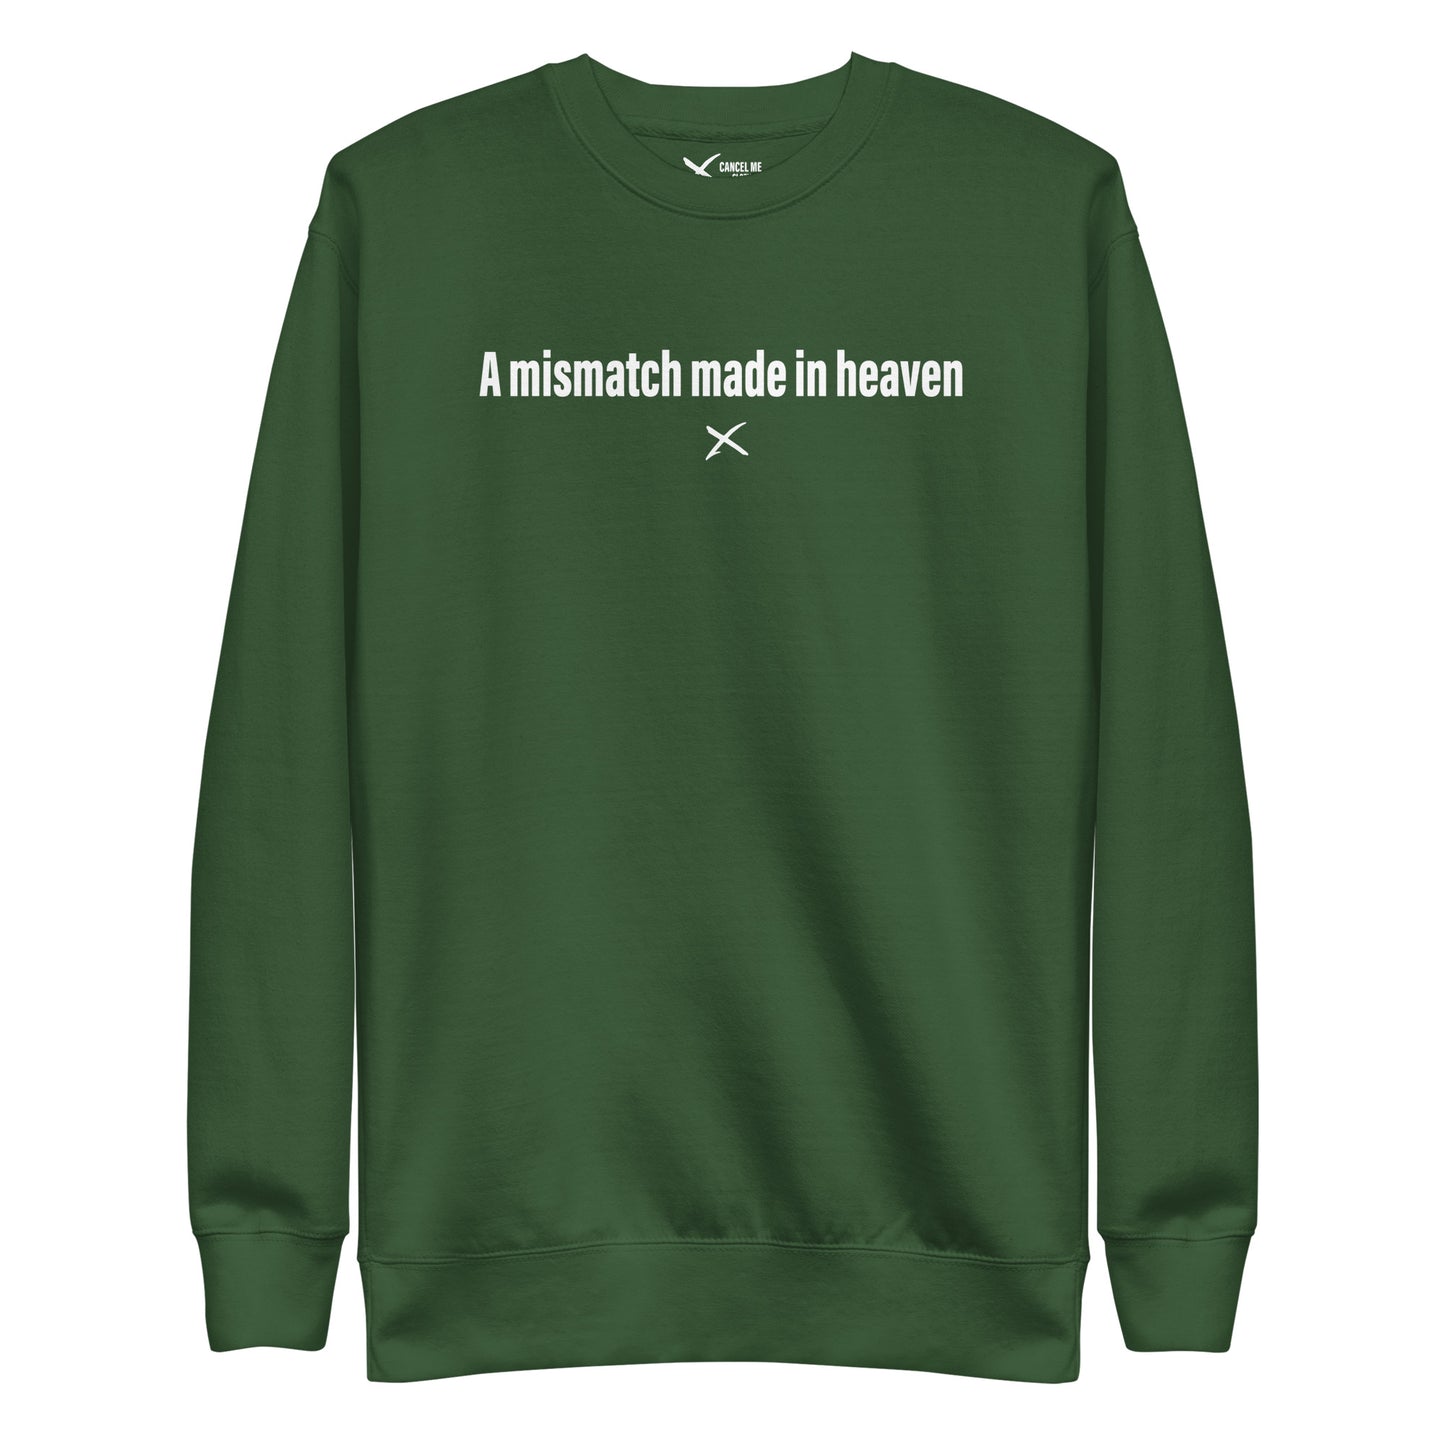 A mismatch made in heaven - Sweatshirt